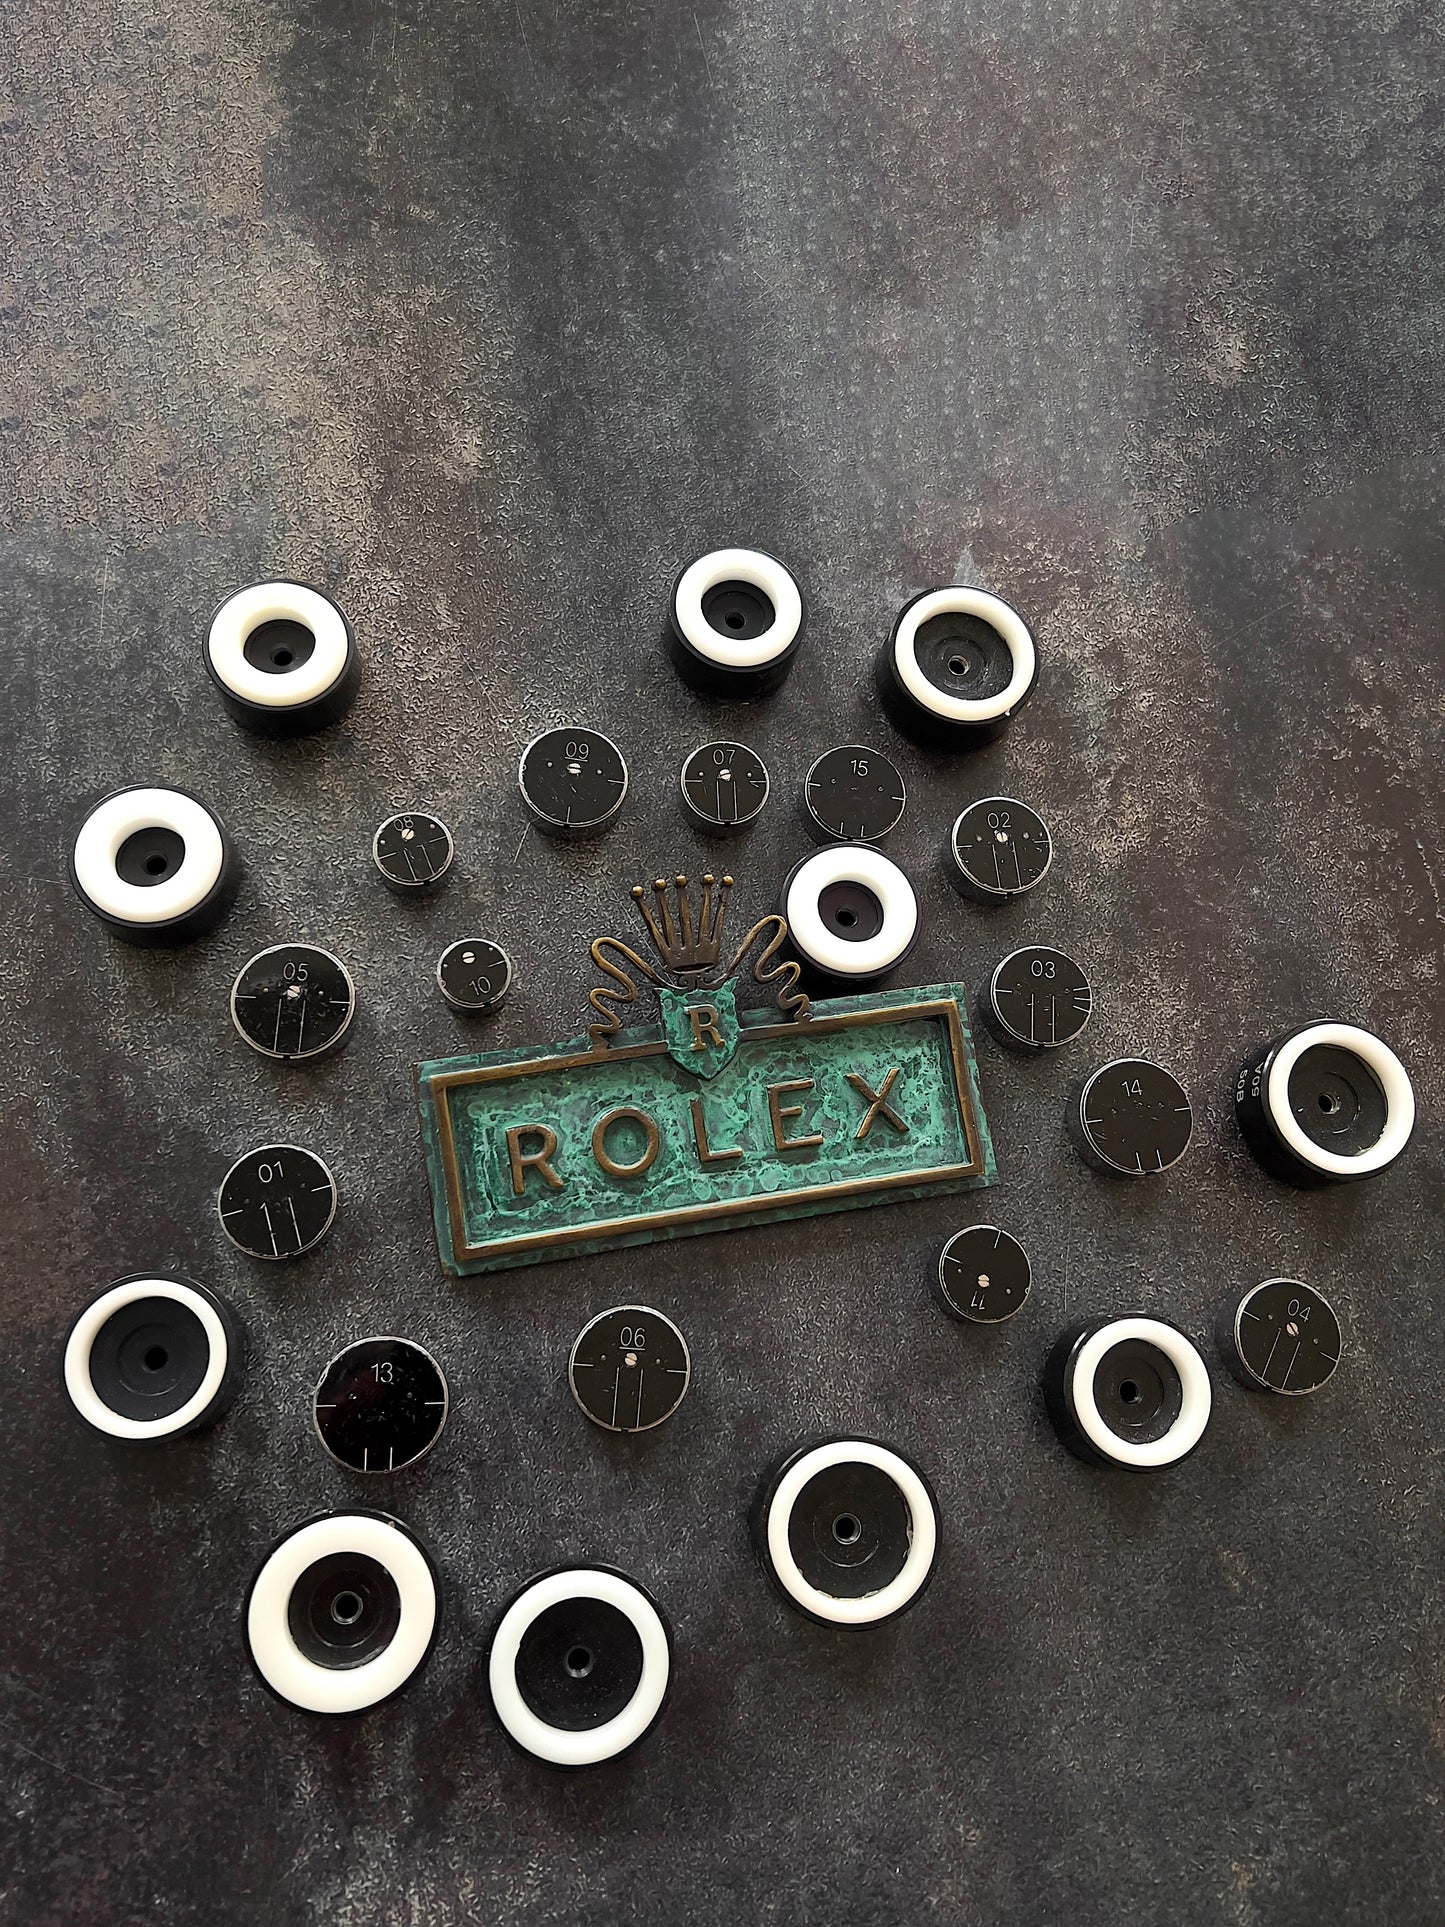 Rolex Original Werkzeug